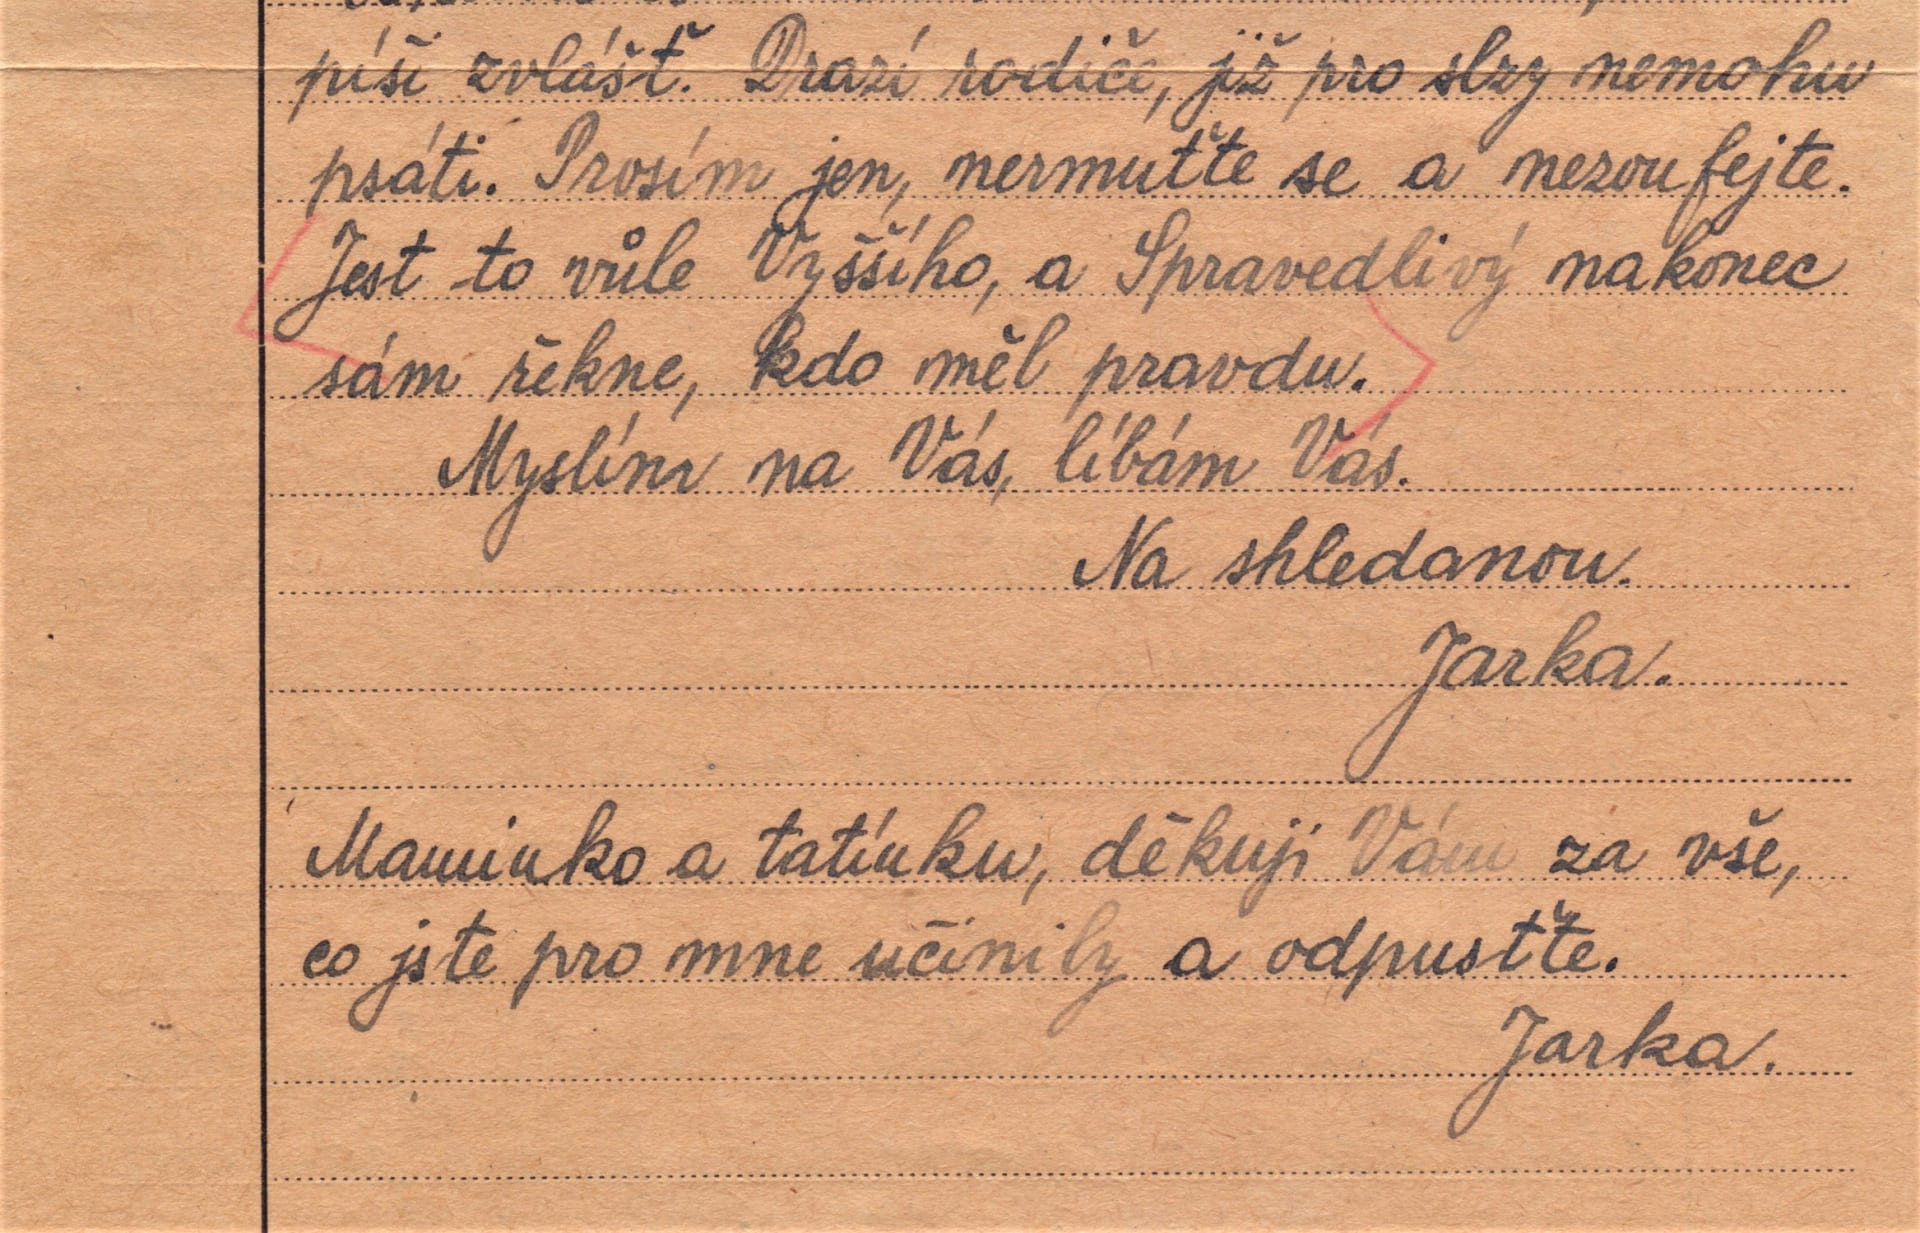 Zpráva z cely smrti. Dopis J. Sládečka z 16. 2. 1943, detail listu. Napsán byl v berlínské věznici jen krátce před popravou. Dopis rodičům nikdy nedošel.